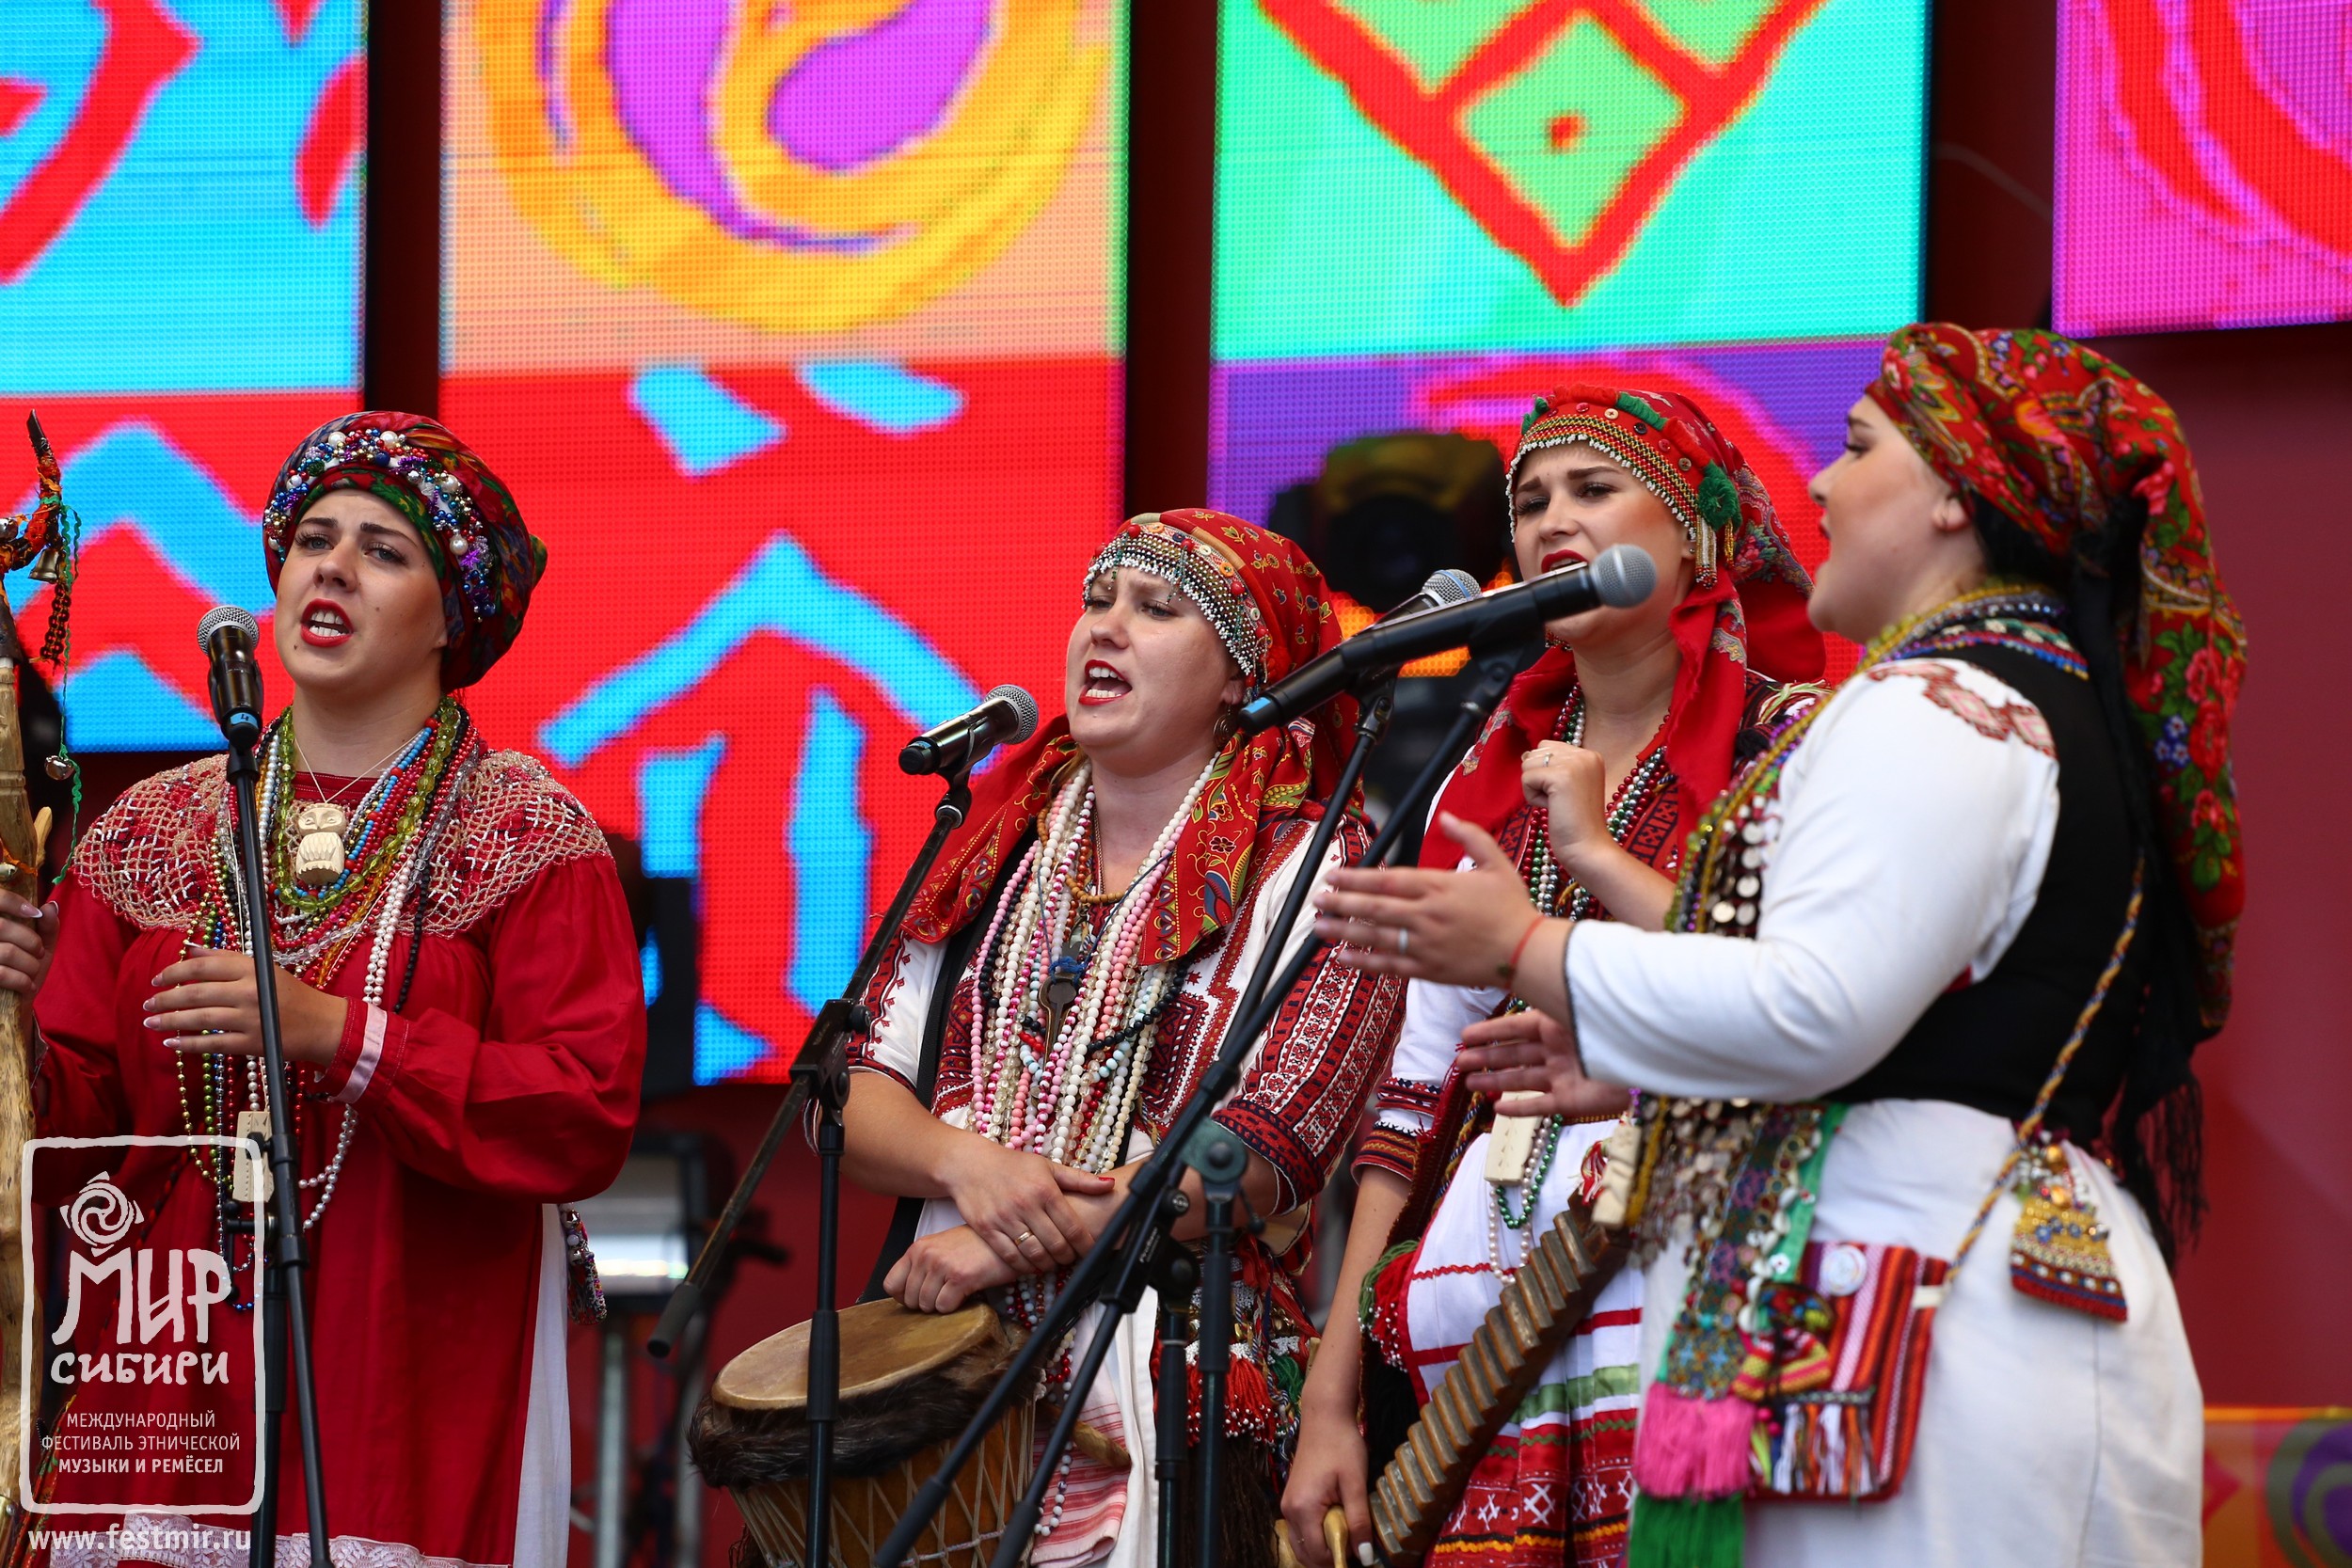 МИР, которым мы живем: завершился юбилейный фестиваль этнической музыки и ремесел МИР Сибири.